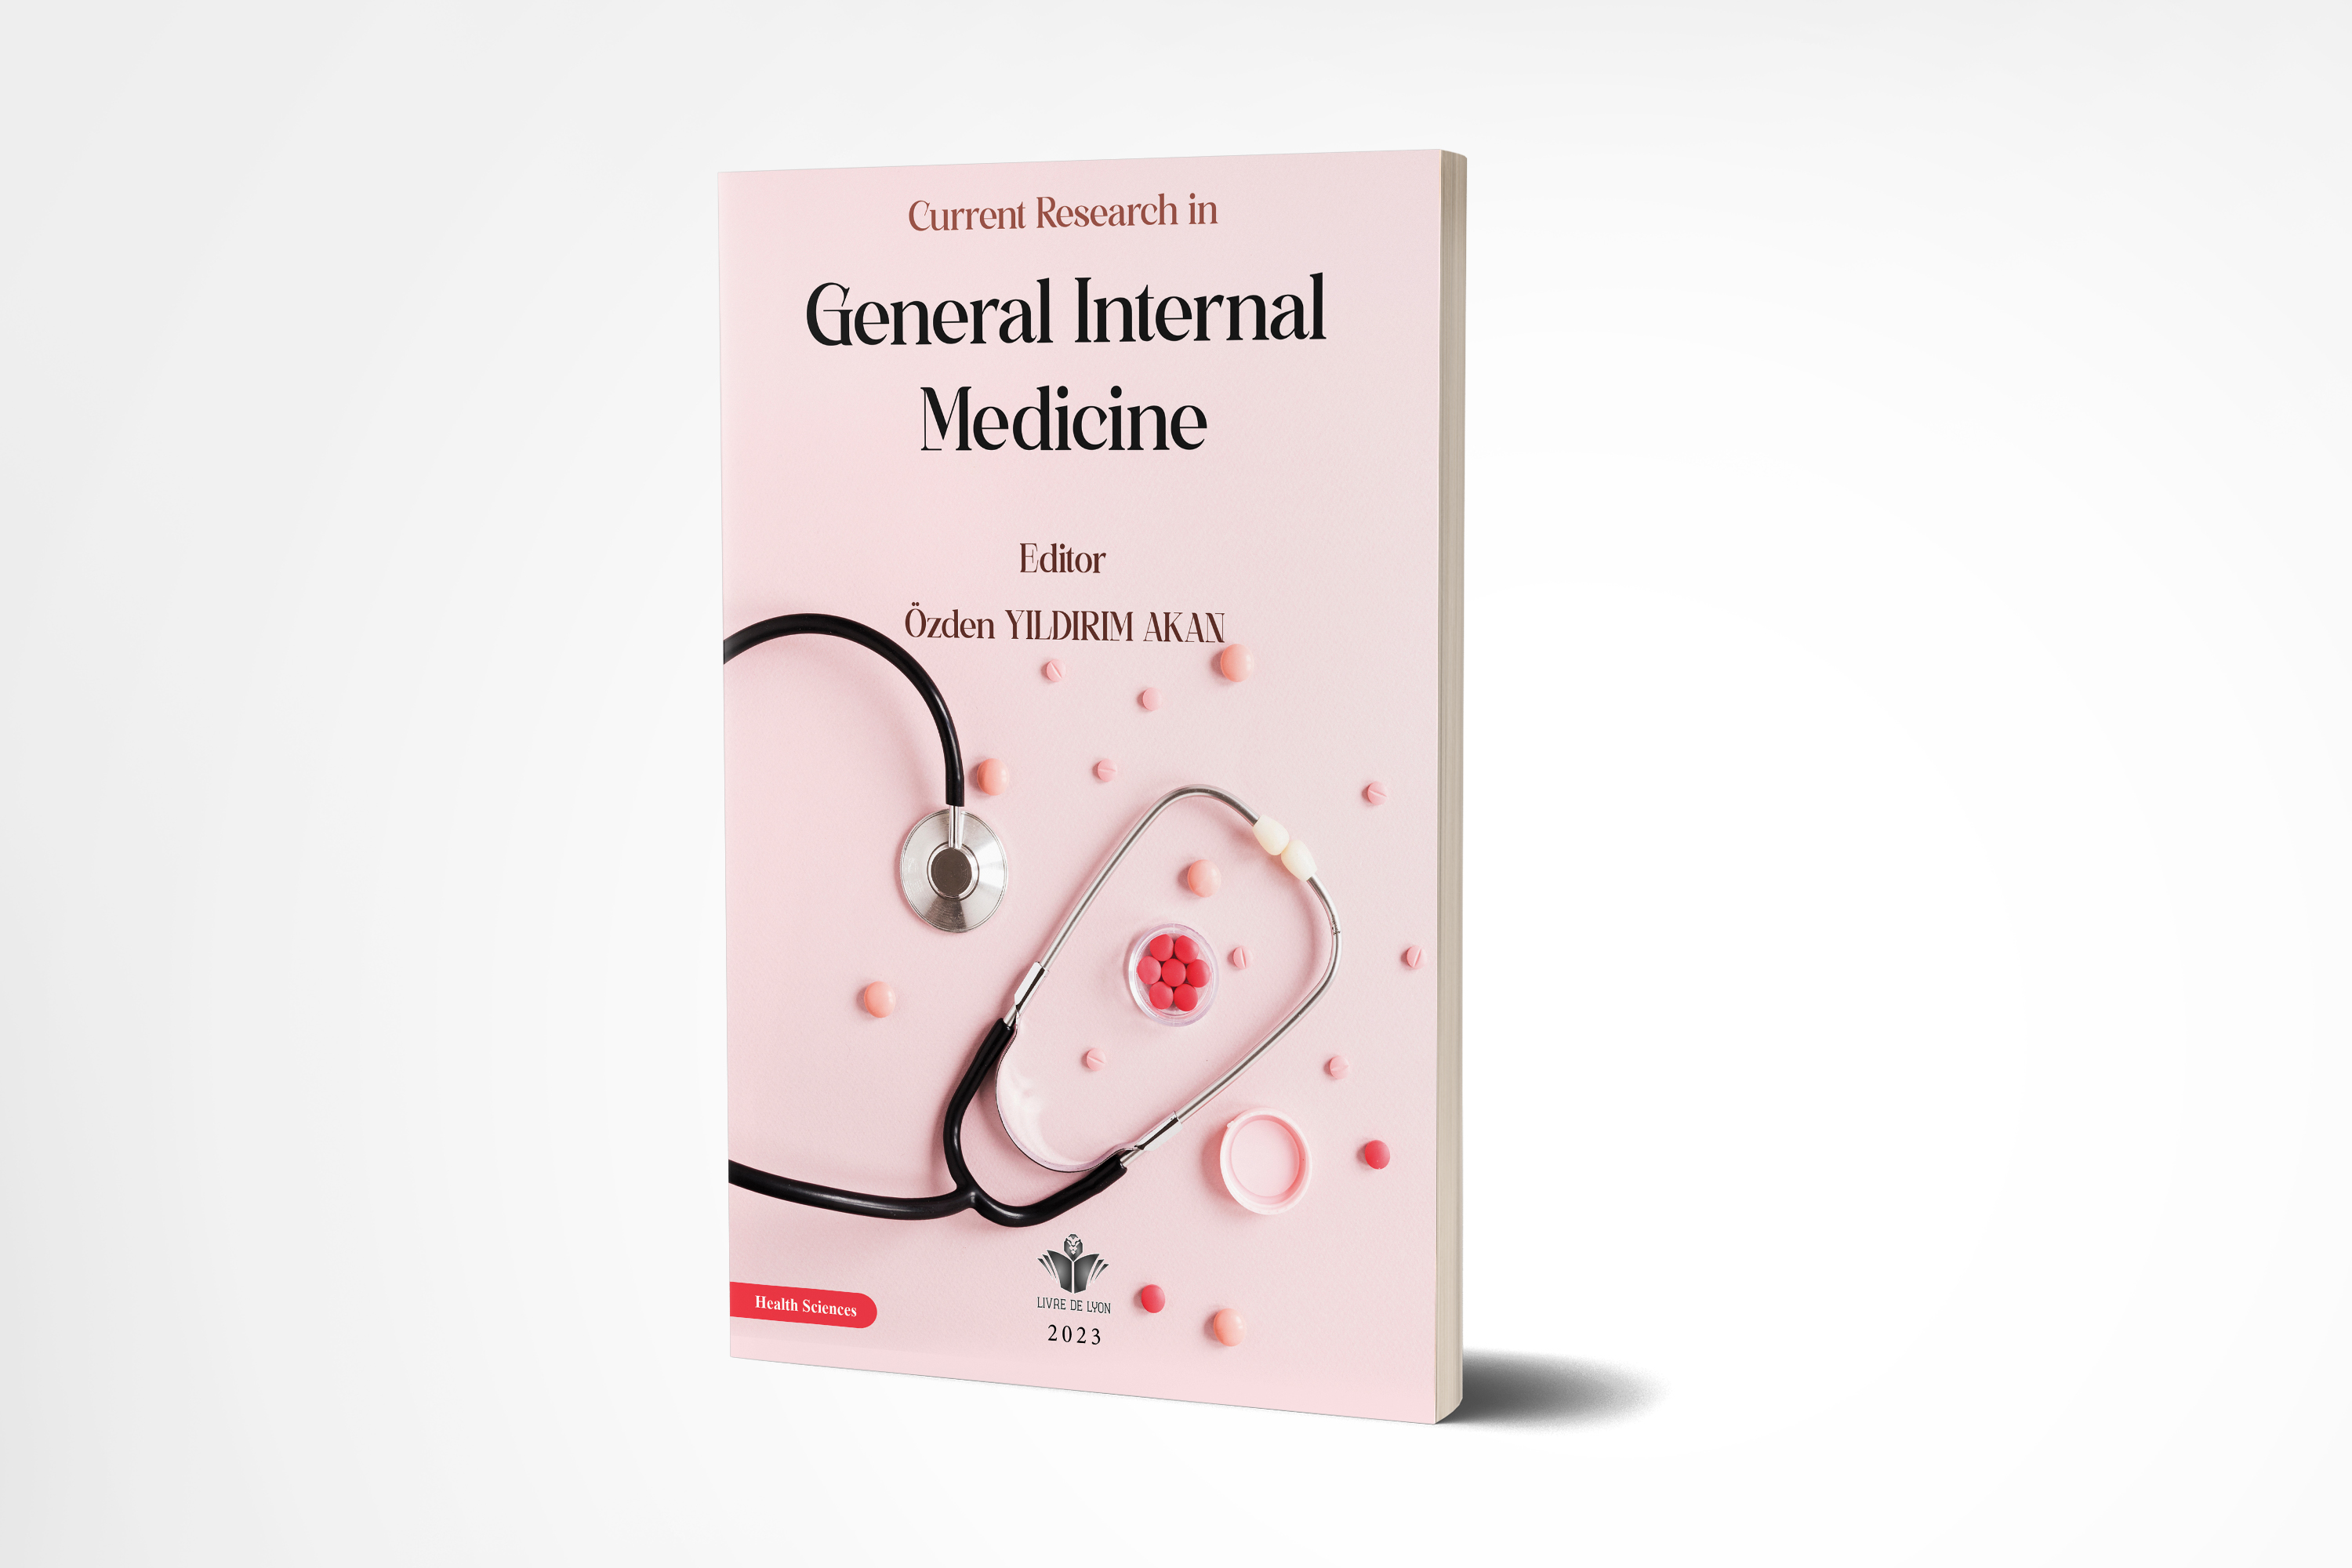 Current Research in General Internal Medicine